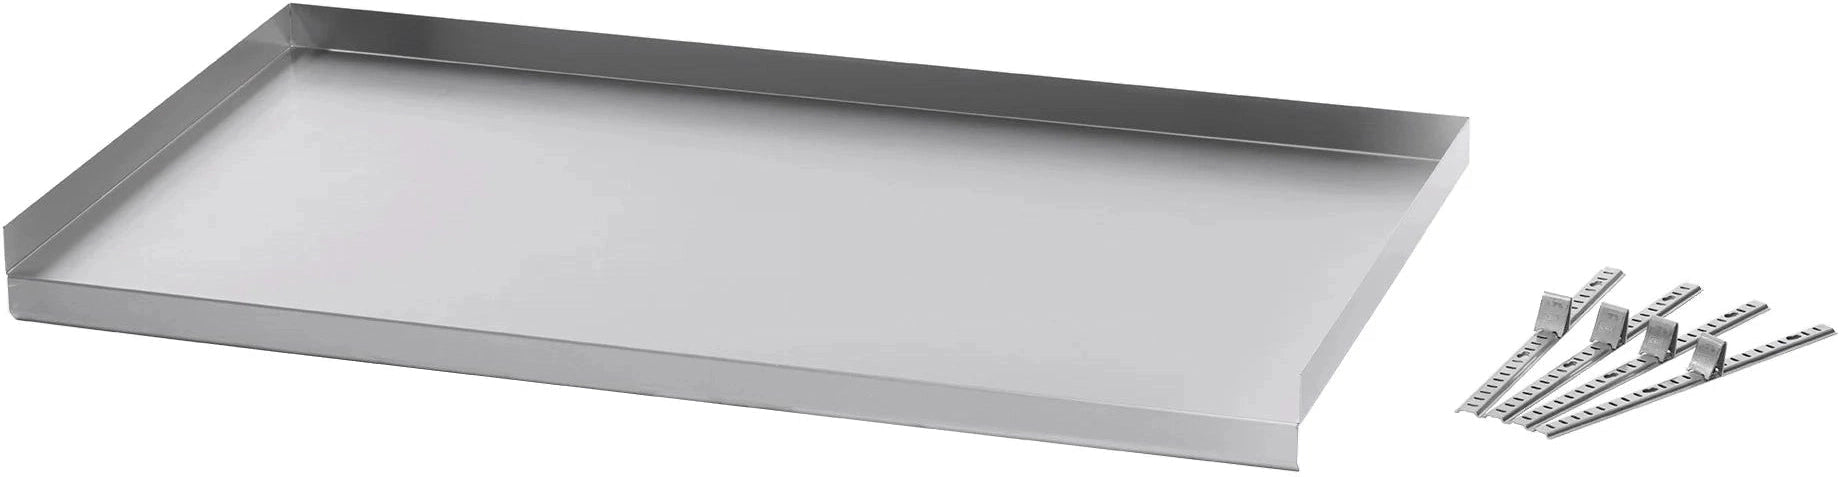 Julien - Rosko 60'' Adjustable Undershelf for Steam Table, Stainless Steel - RO-ACC-STFE-US60